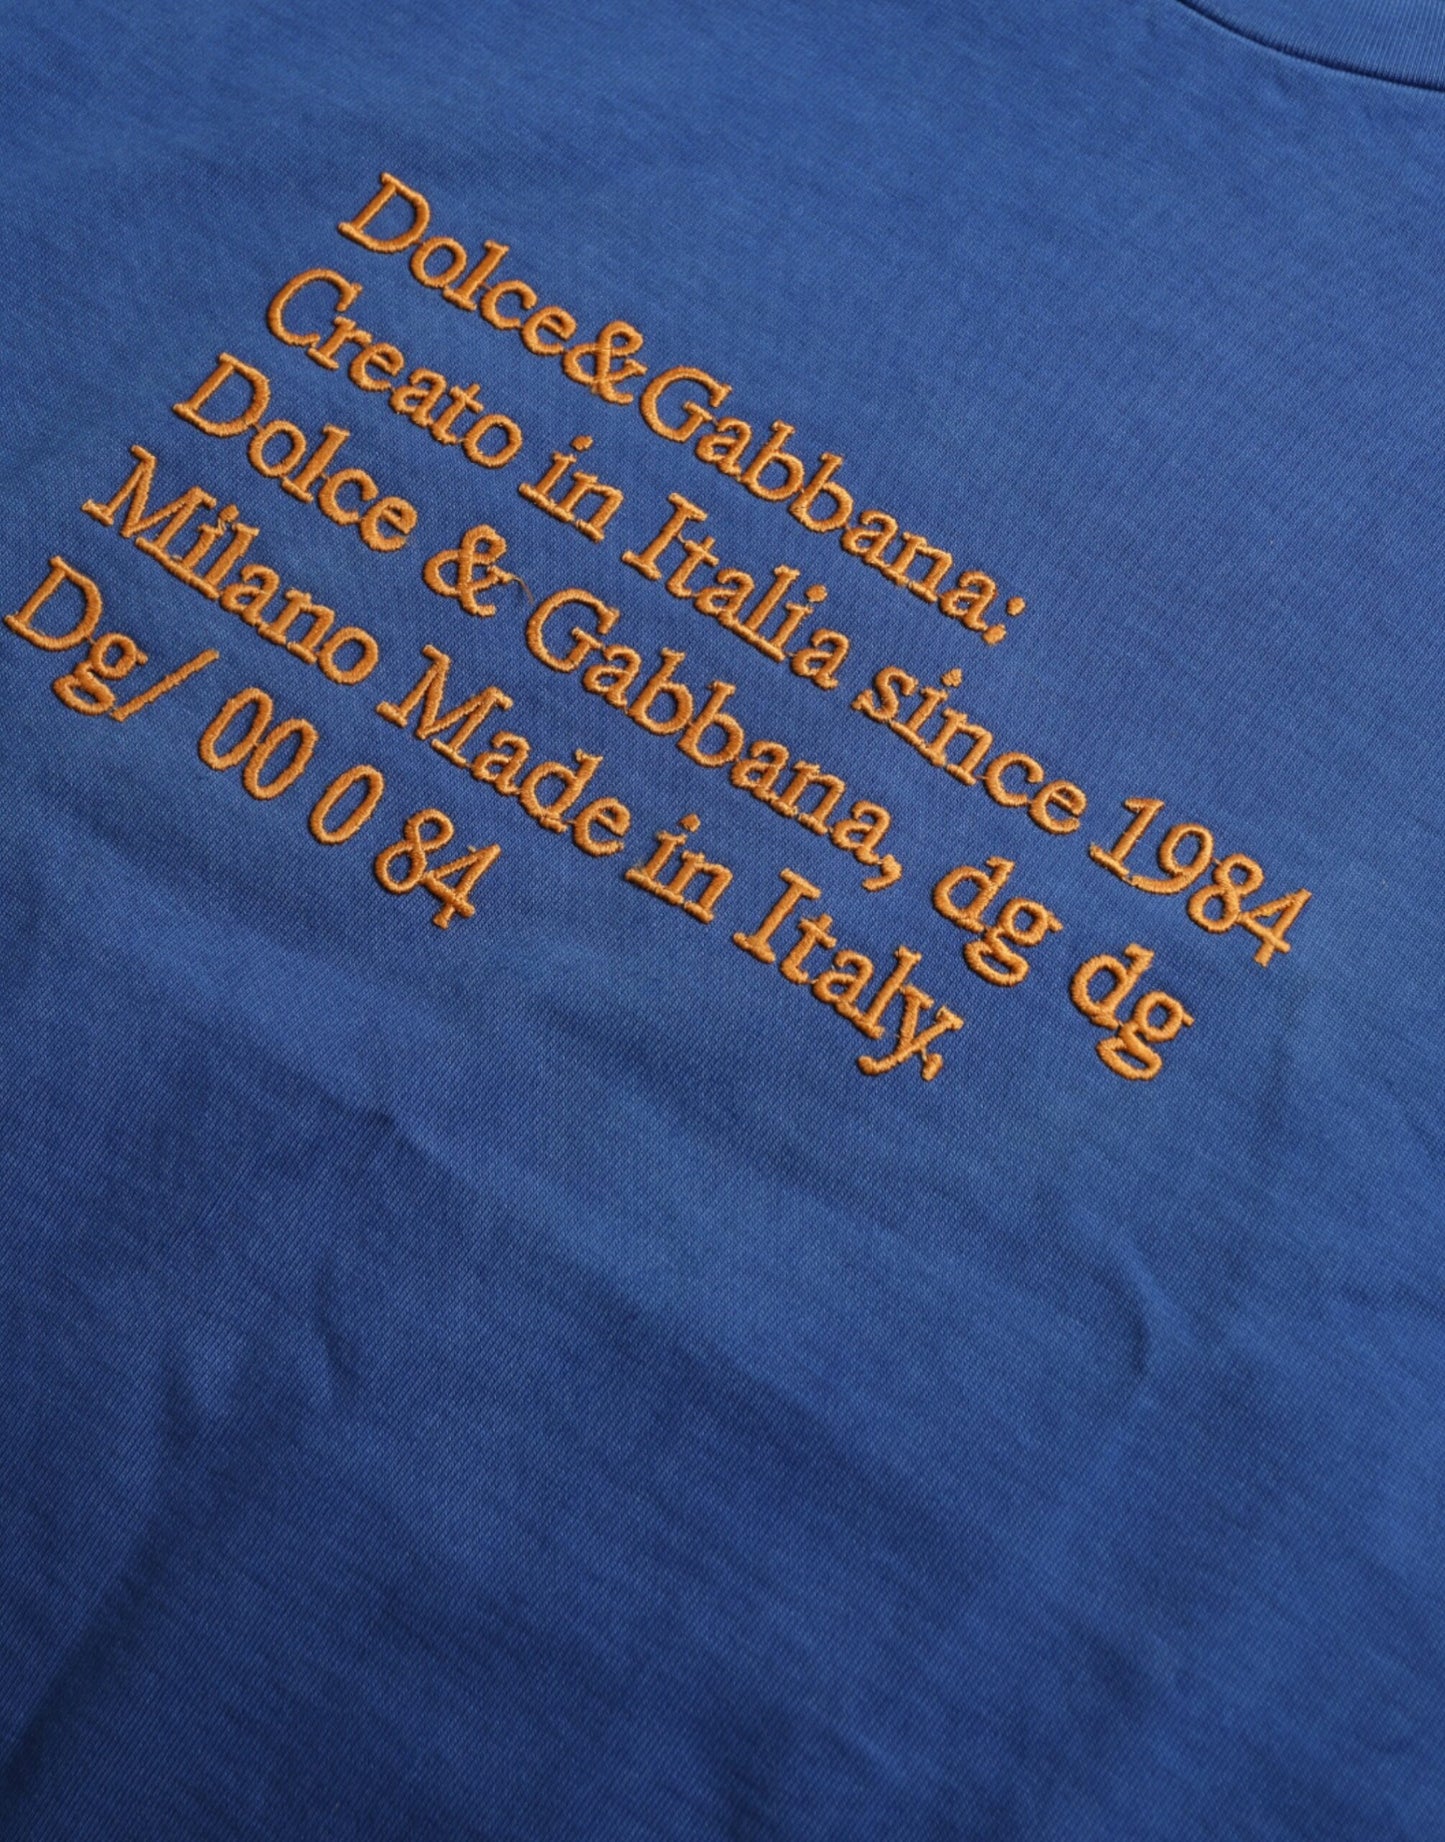 Exquisite Blue Cotton Crew Neck T-Shirt